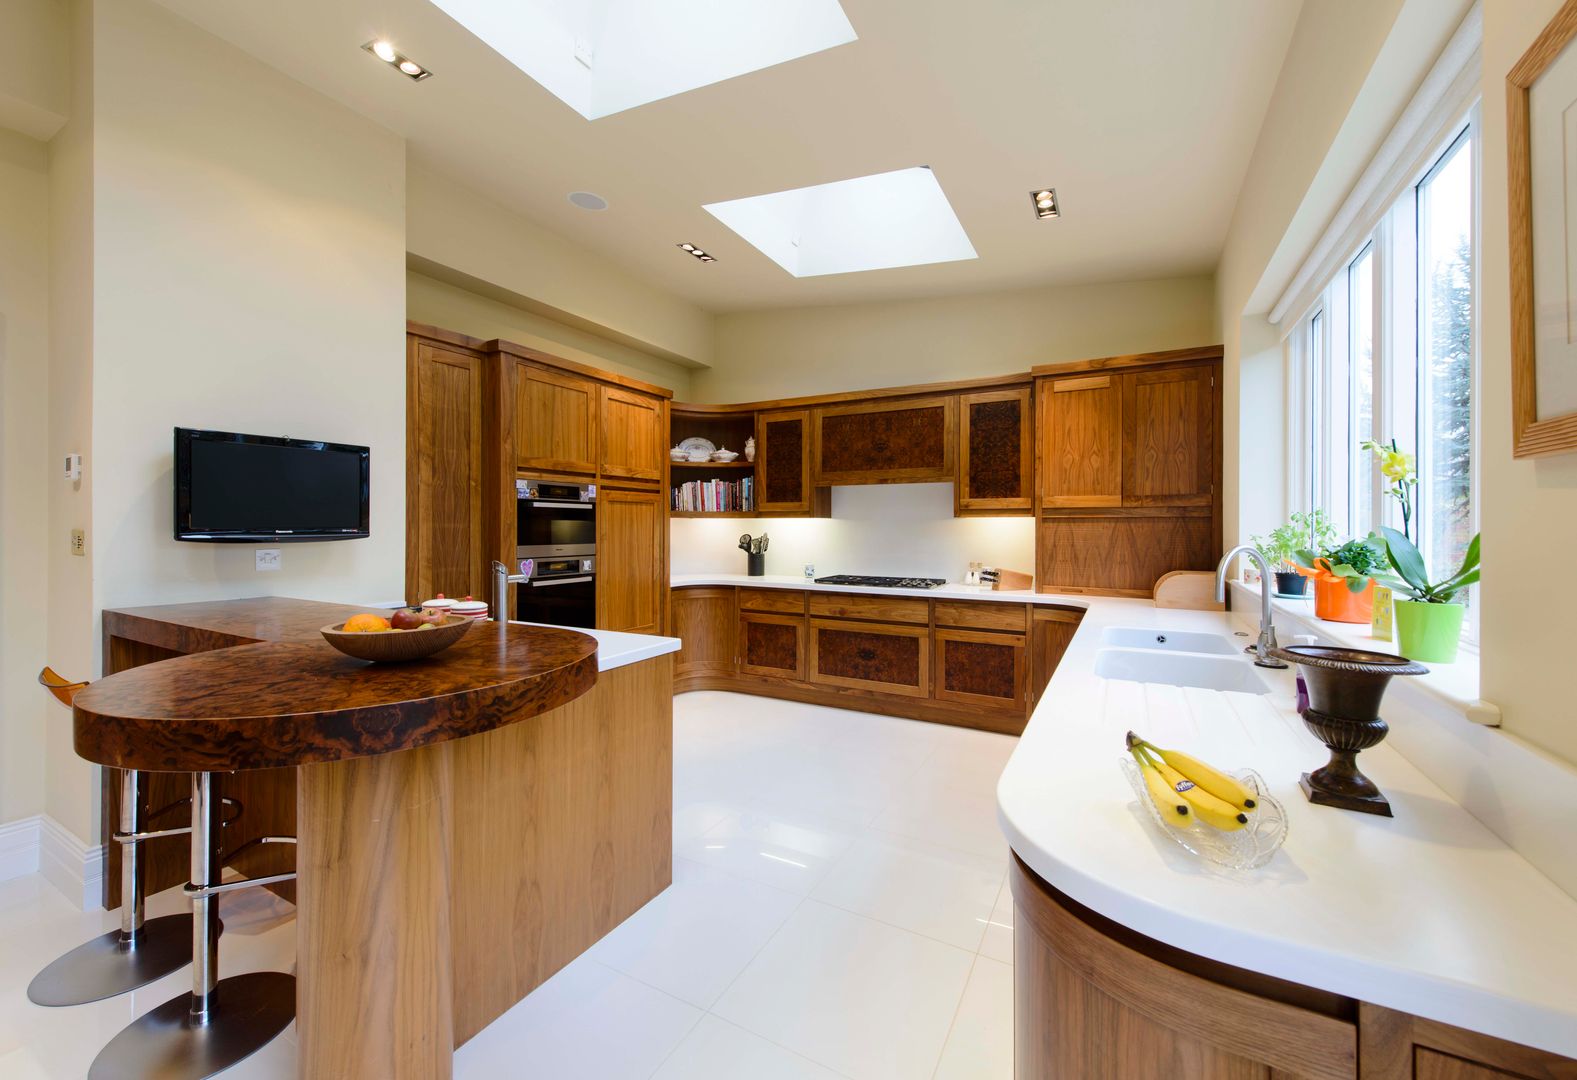 Walnut Curved Kitchen with White Corian Worktops George Bond Interior Design Modern Mutfak Aksesuarlar & Tekstil Ürünleri